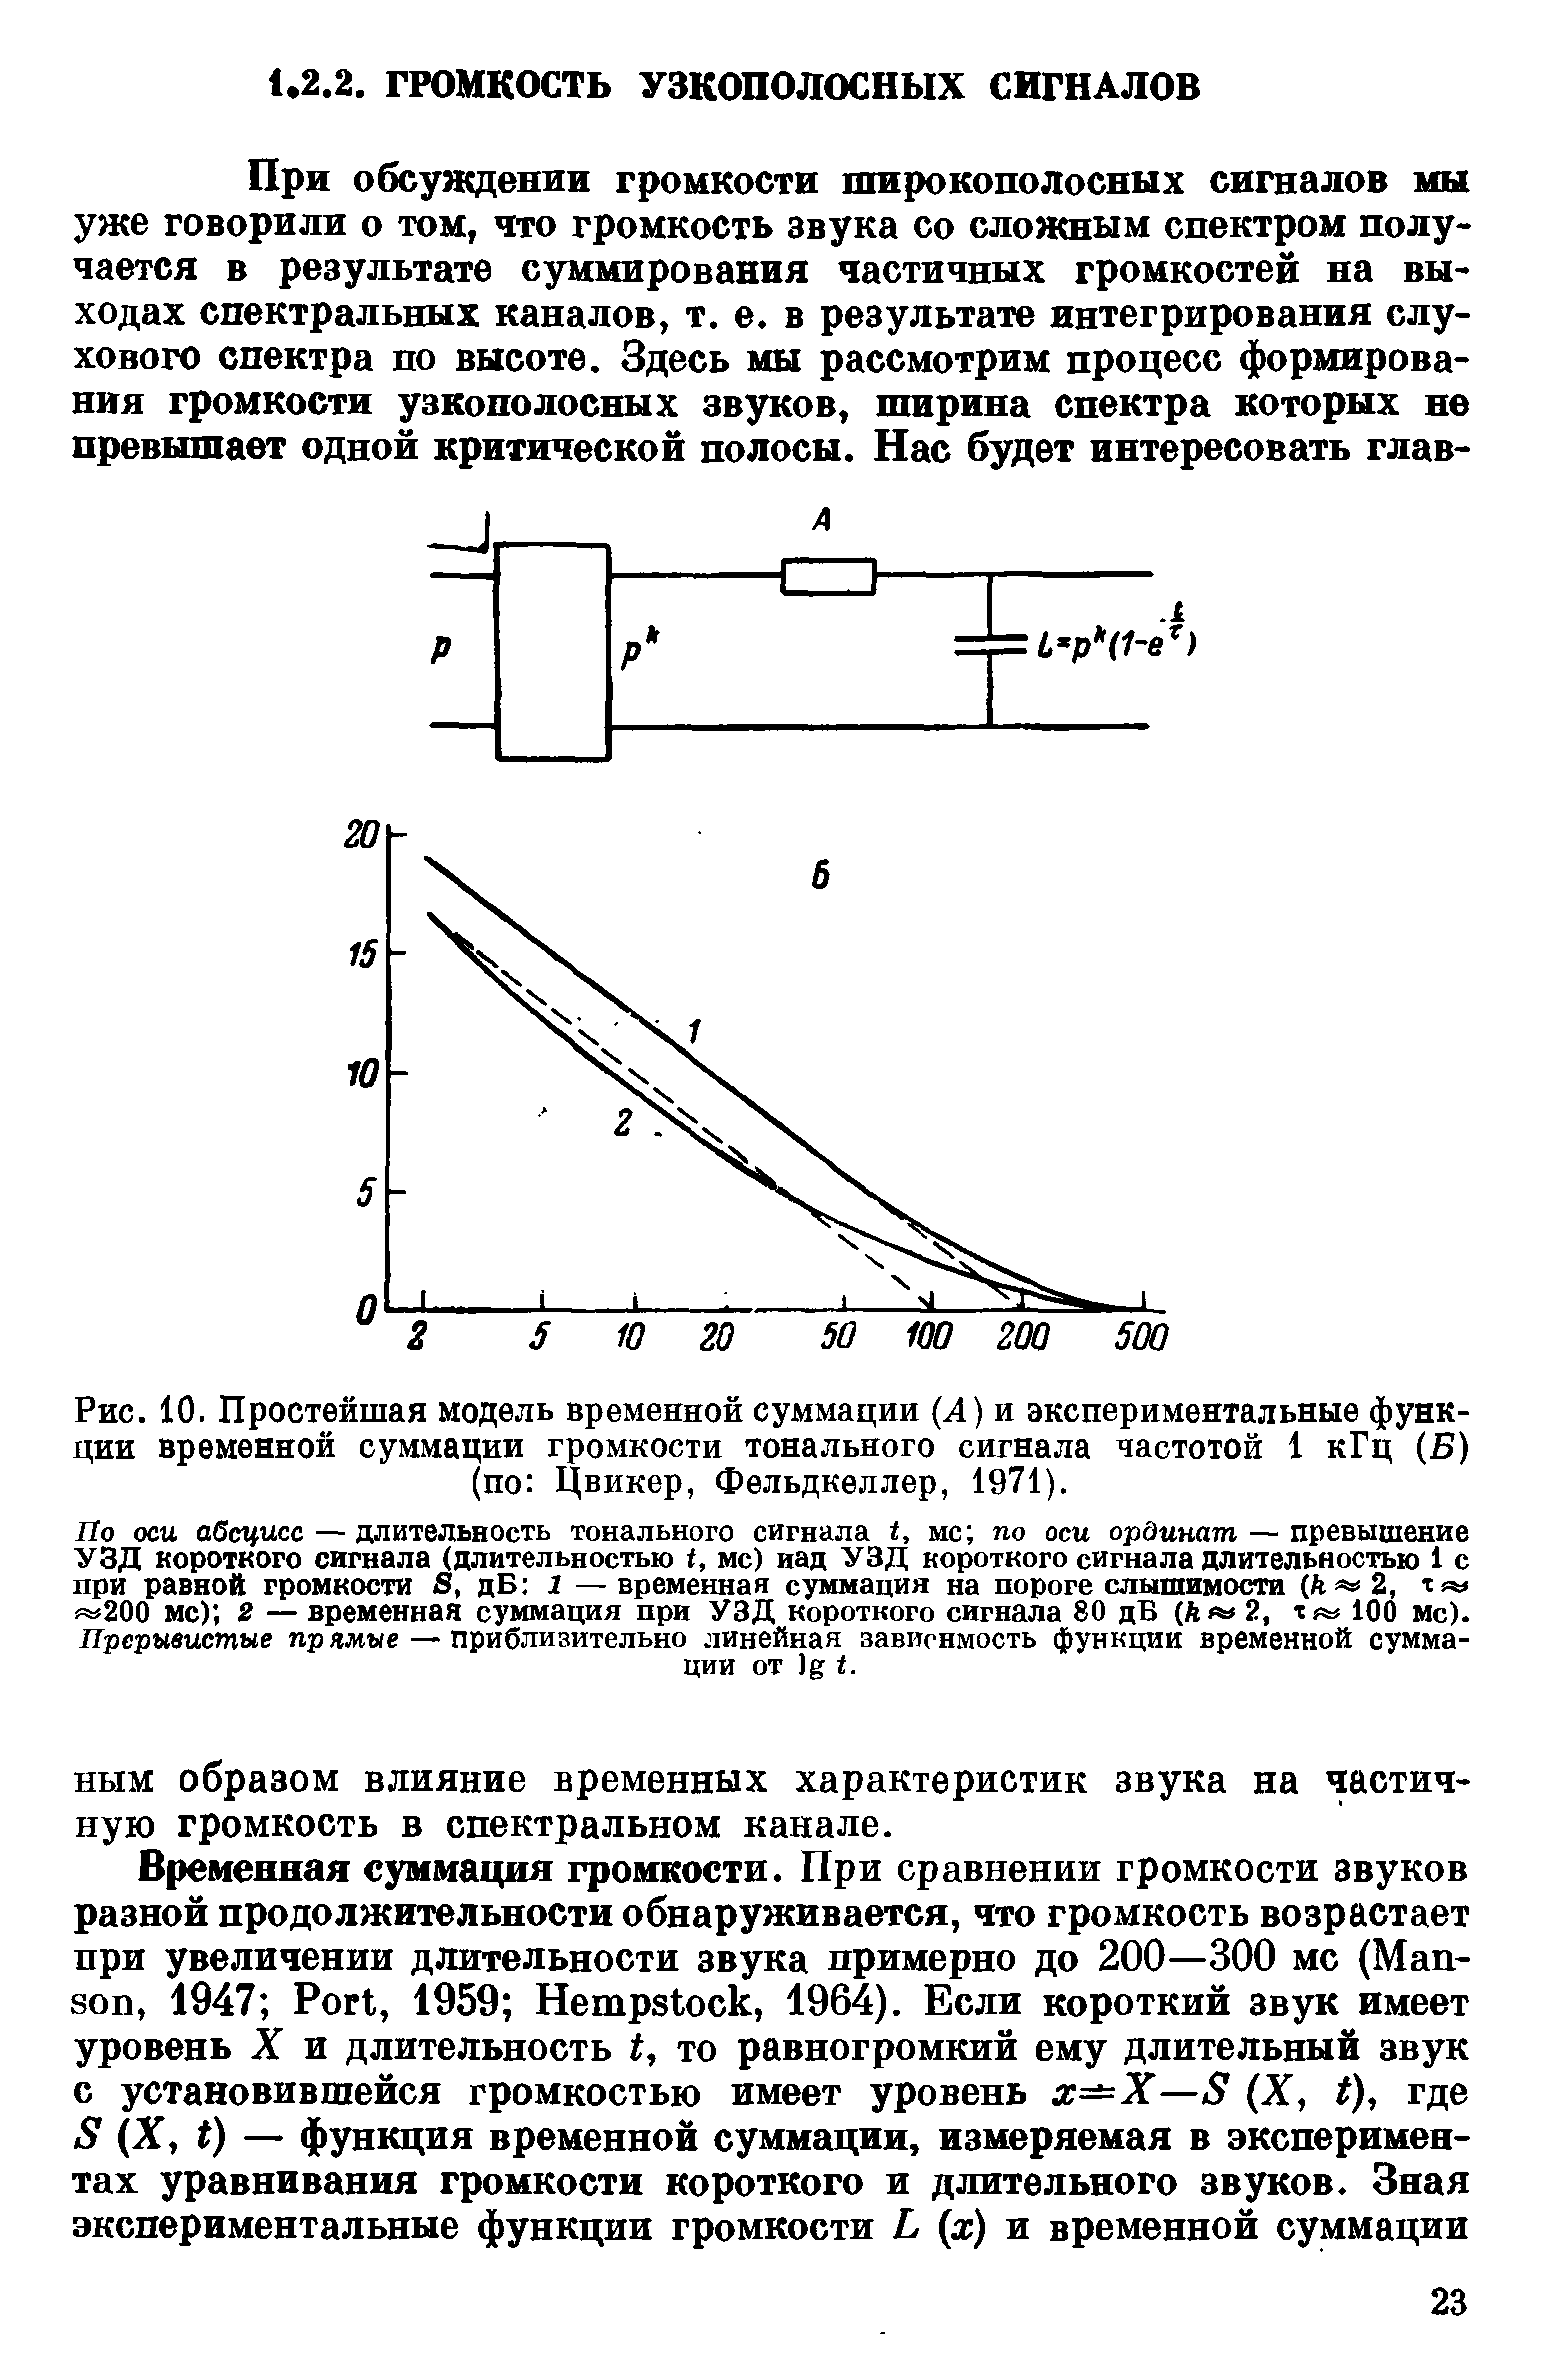 Рис. 10. Простейшая модель временной суммации (4) и экспериментальные функции временной суммации громкости тонального сигнала частотой 1 кГц (Б) (по Цвикер, Фельдкеллер, 1971).